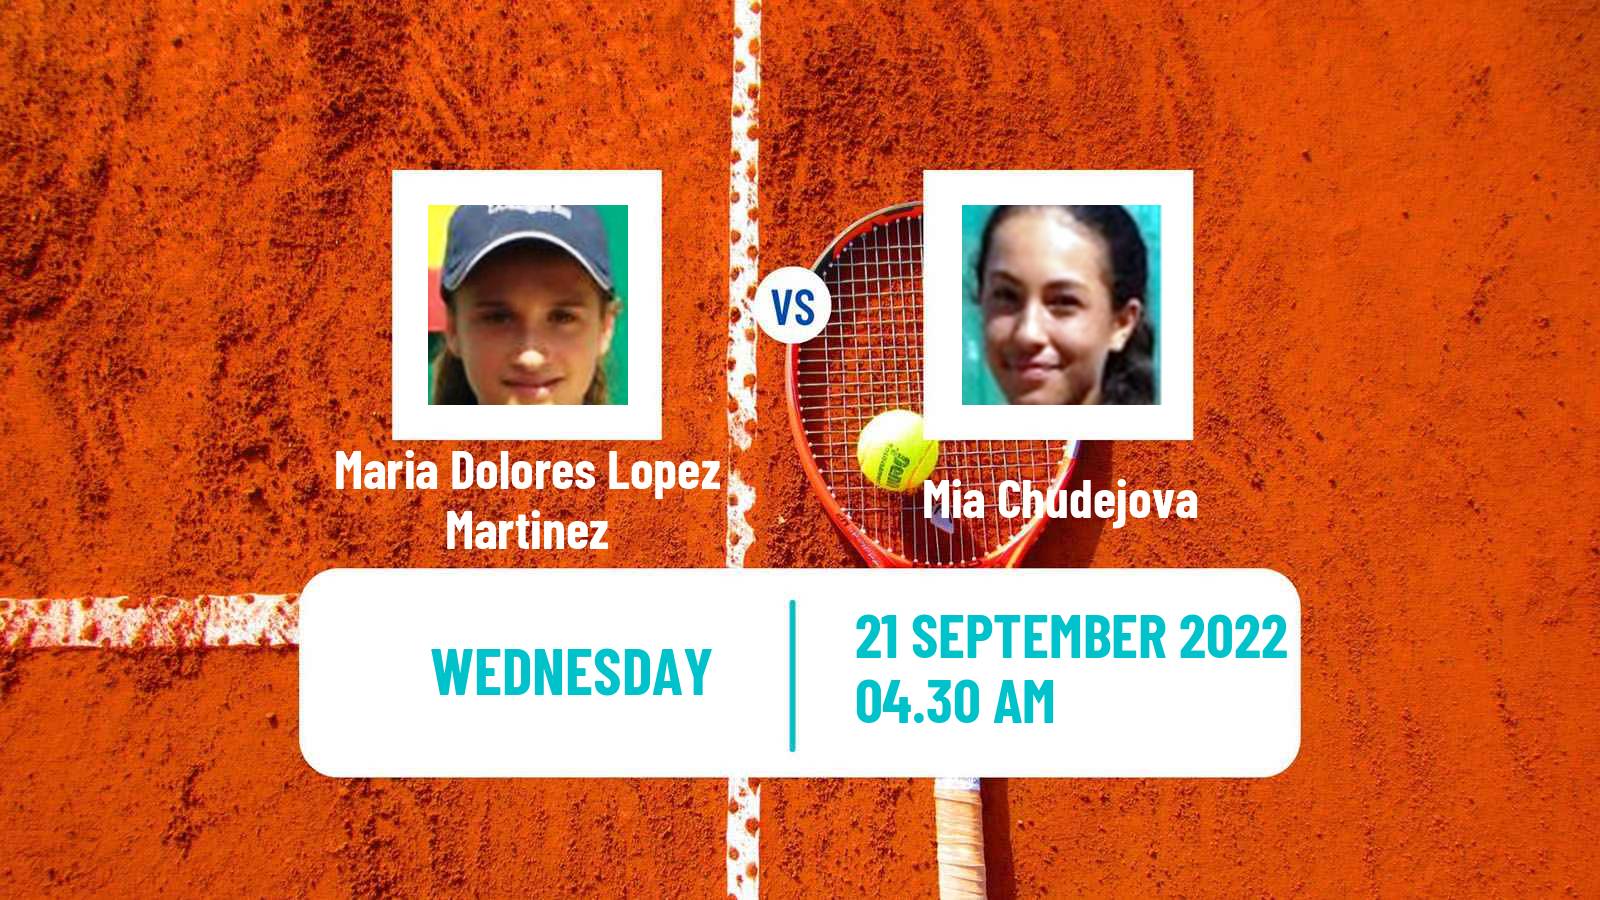 Tennis ITF Tournaments Maria Dolores Lopez Martinez - Mia Chudejova